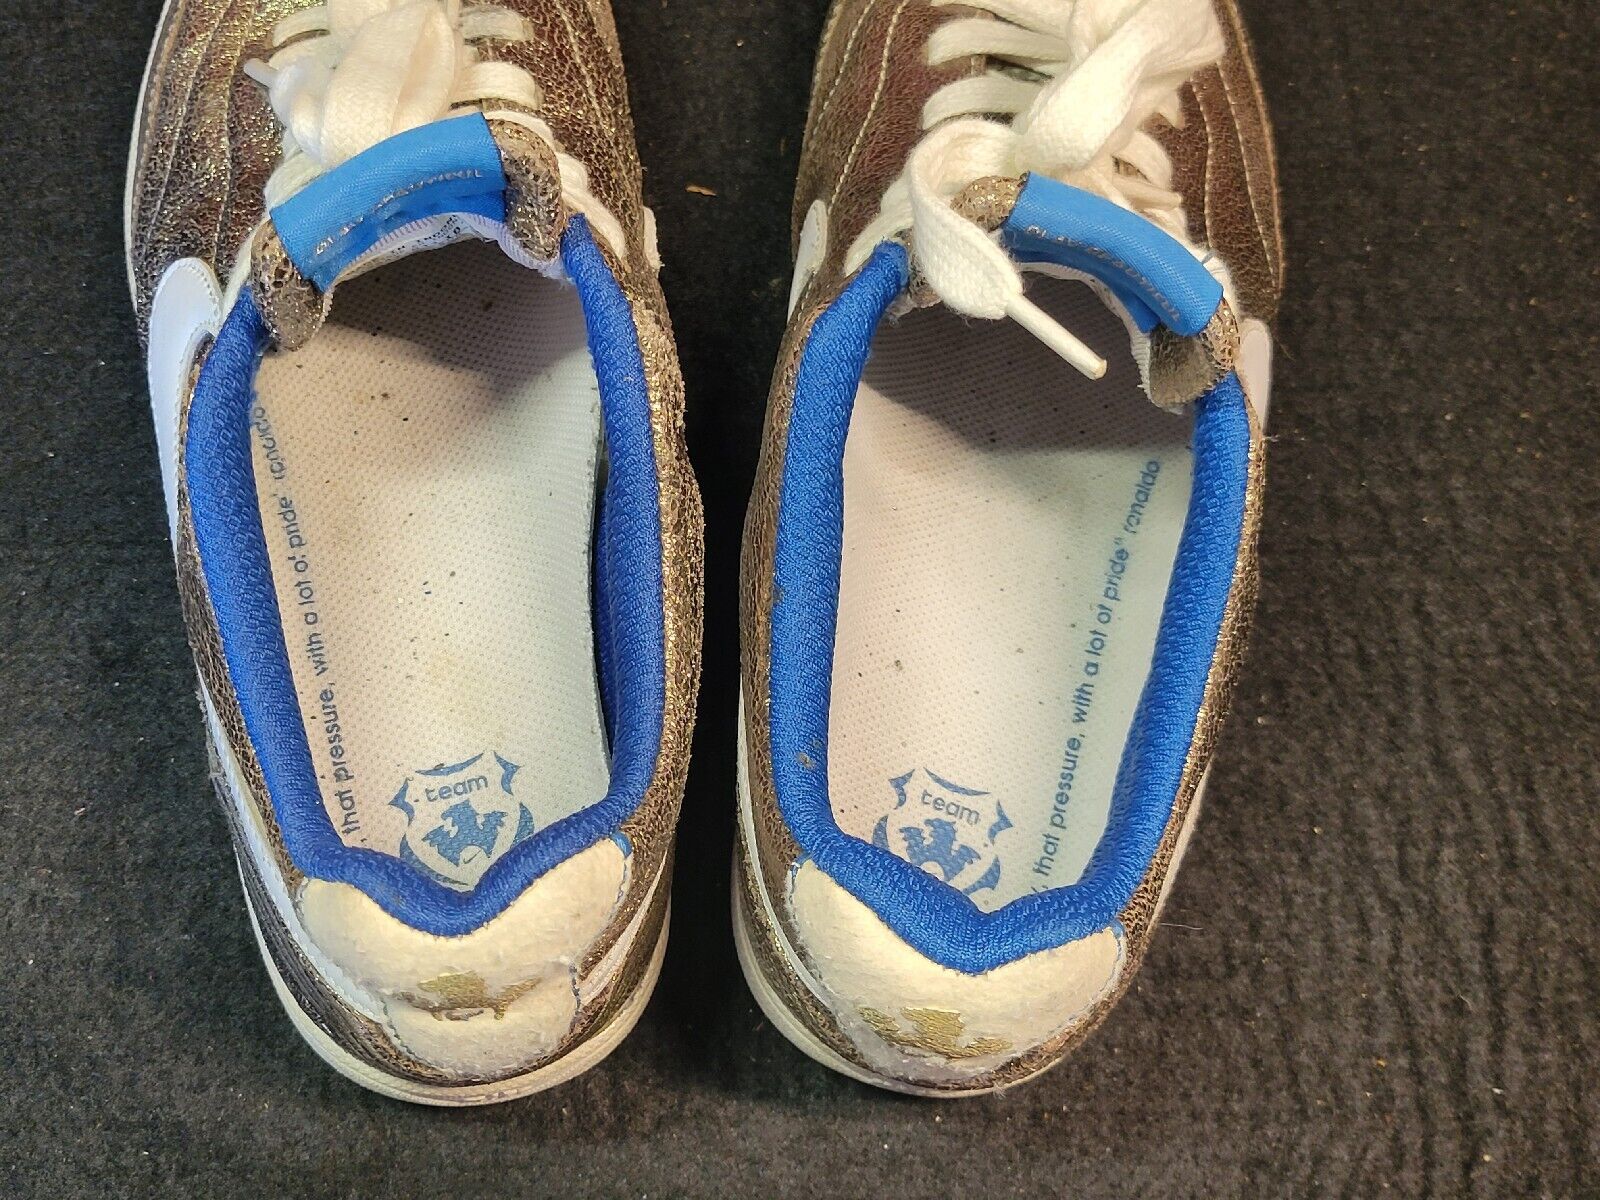 Nike Tiempo Joga Bonito Soccer Shoes Mens Size 7.5 Gold Blue White